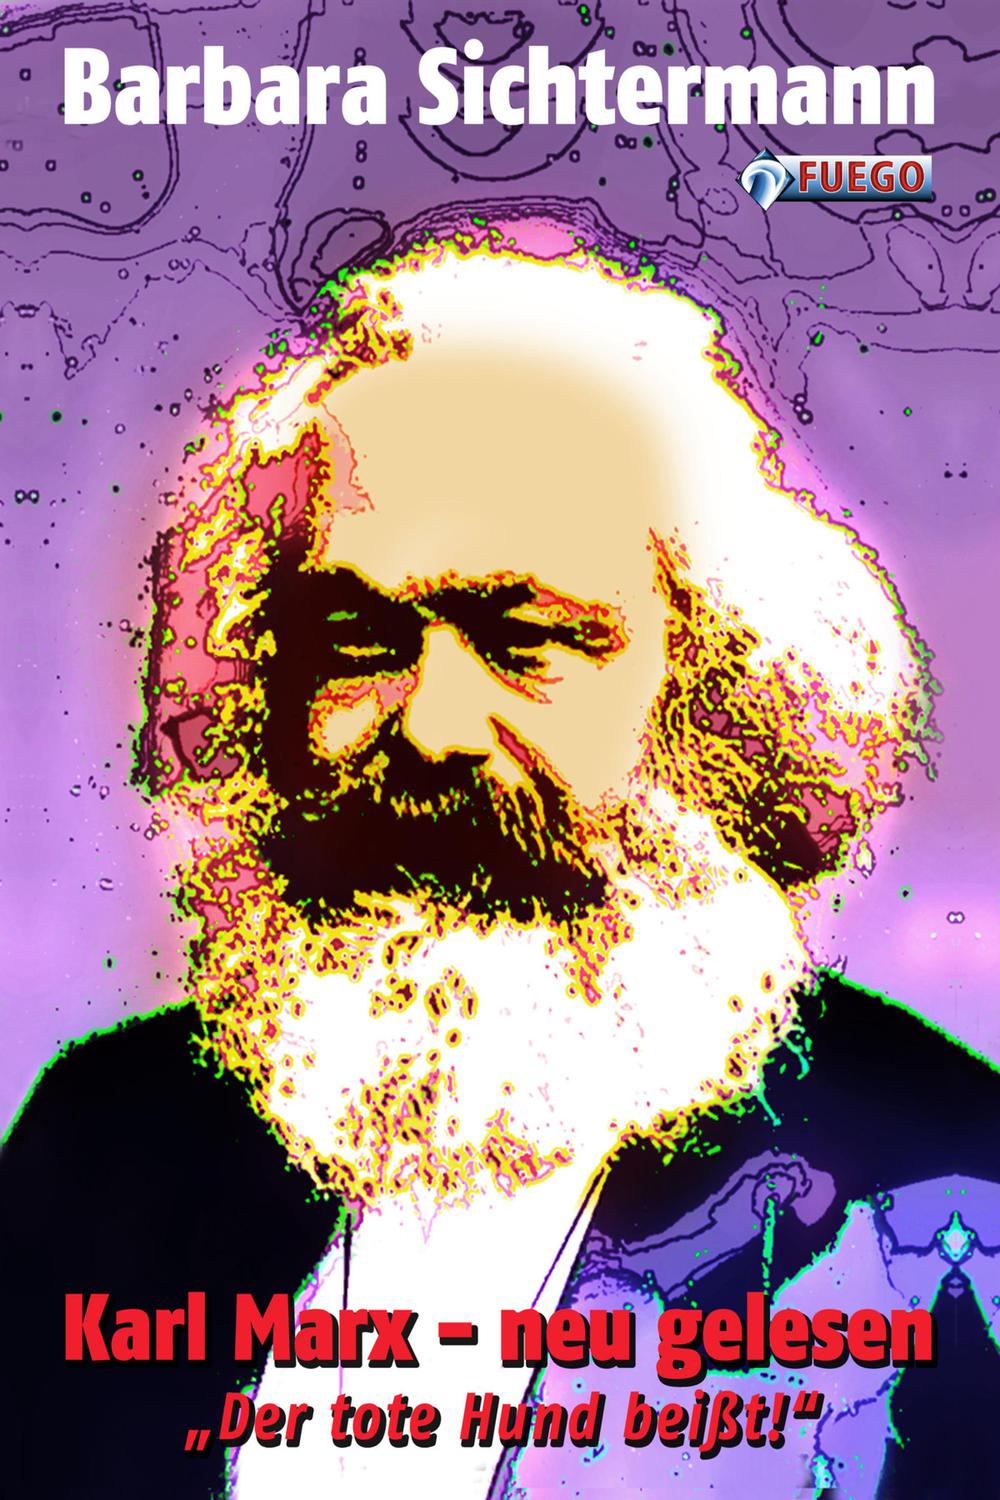 Karl Marx - neu gelesen - Barbara Sichtermann, Karl Marx